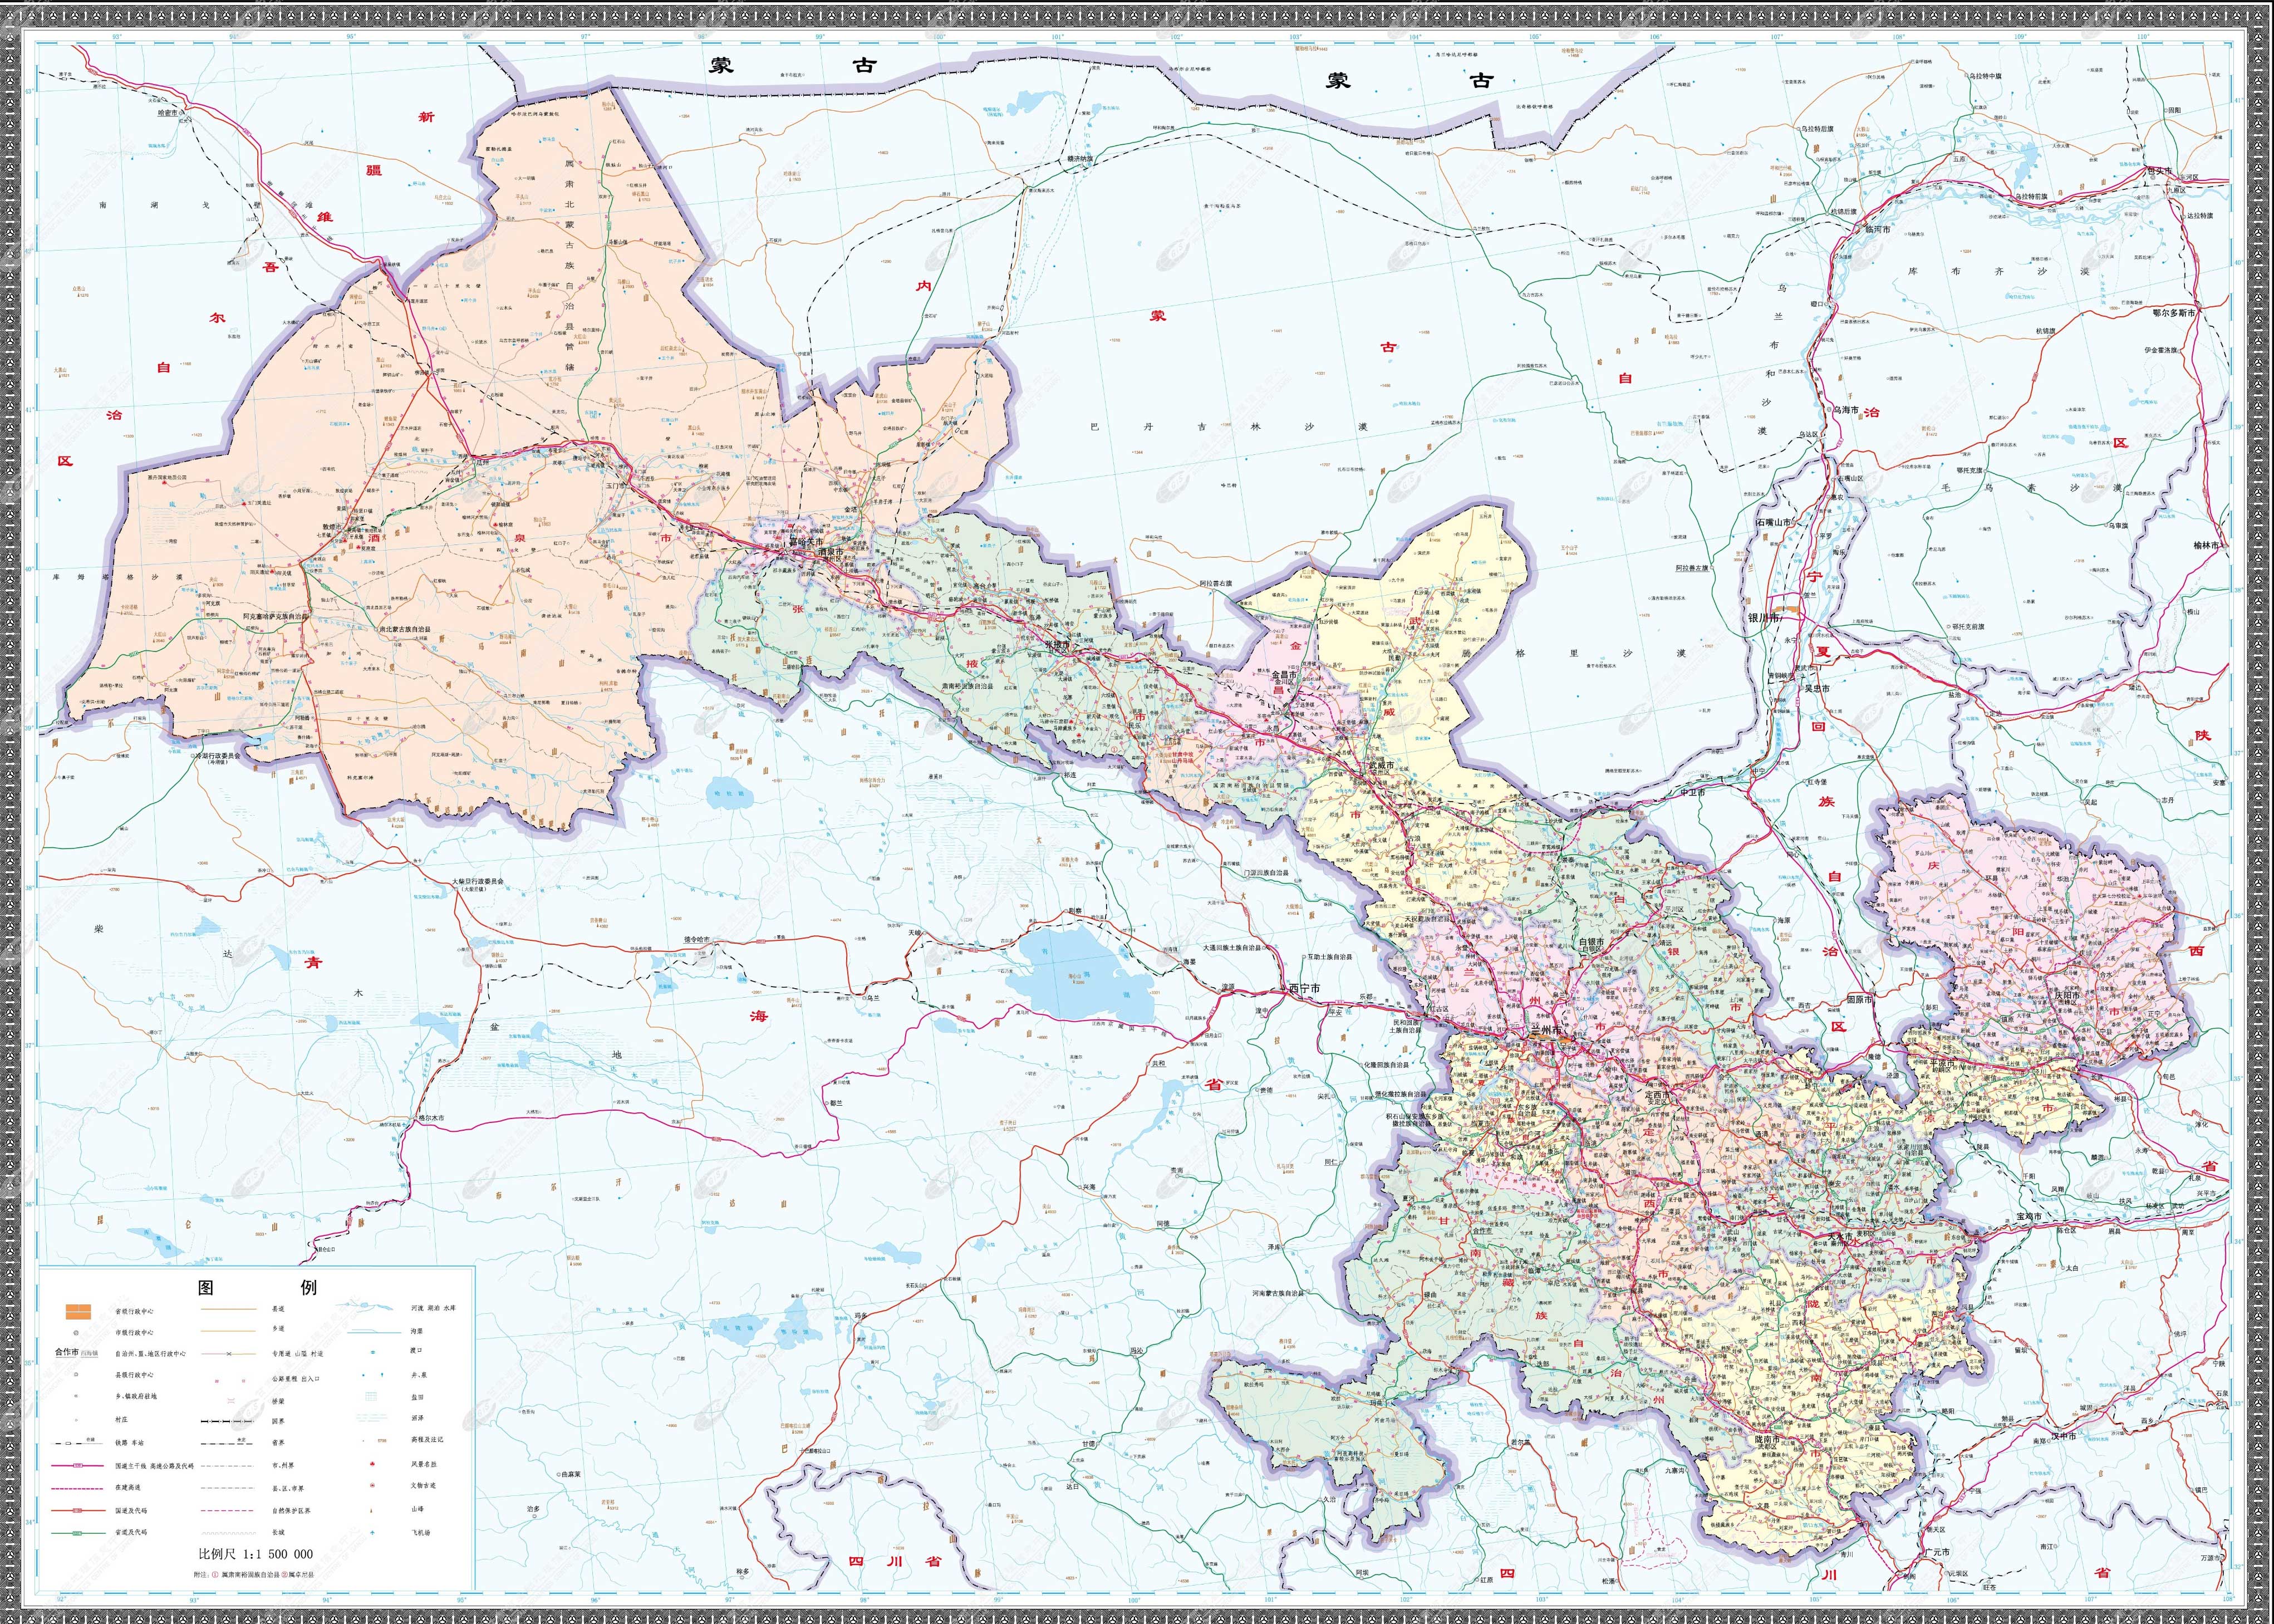 甘肃  宁夏  新疆  青海  西藏  香港  澳门  台湾 上一幅地图: 甘肃图片